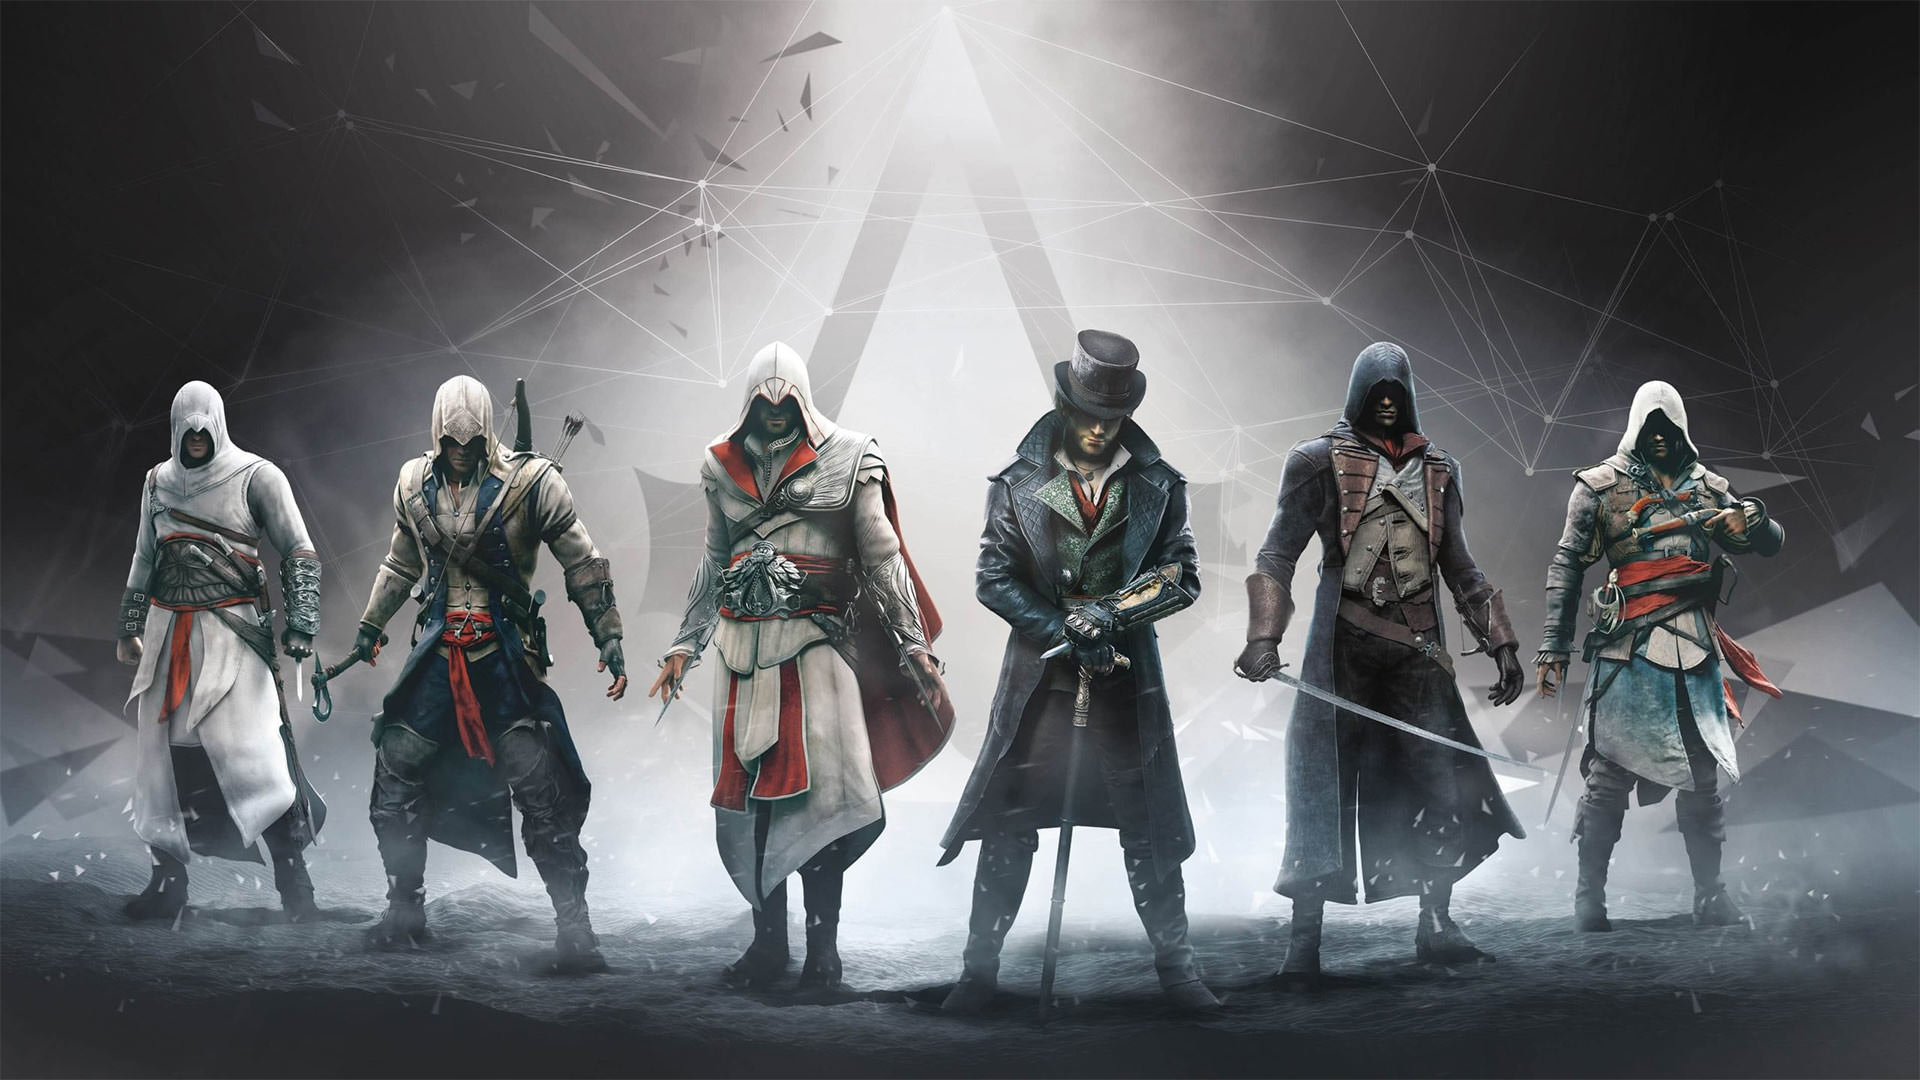 نقش بسیار زیاد روایت داستان در بازی Assassin's Creed Infinity یوبیسافت